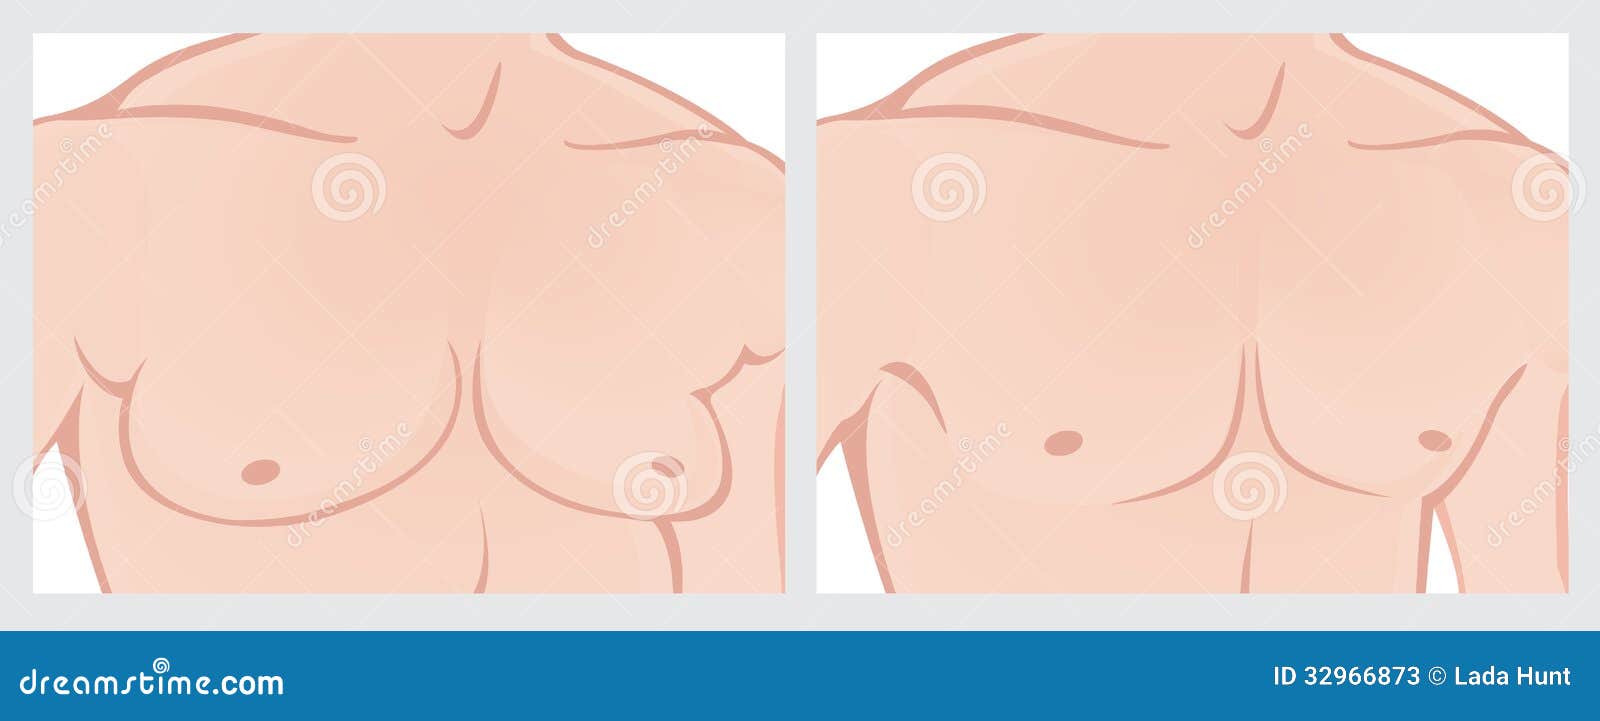 Męskiej klatki piersiowej redukcja. Ilustracja męska klatka piersiowa przed i po chirurgią plastyczną